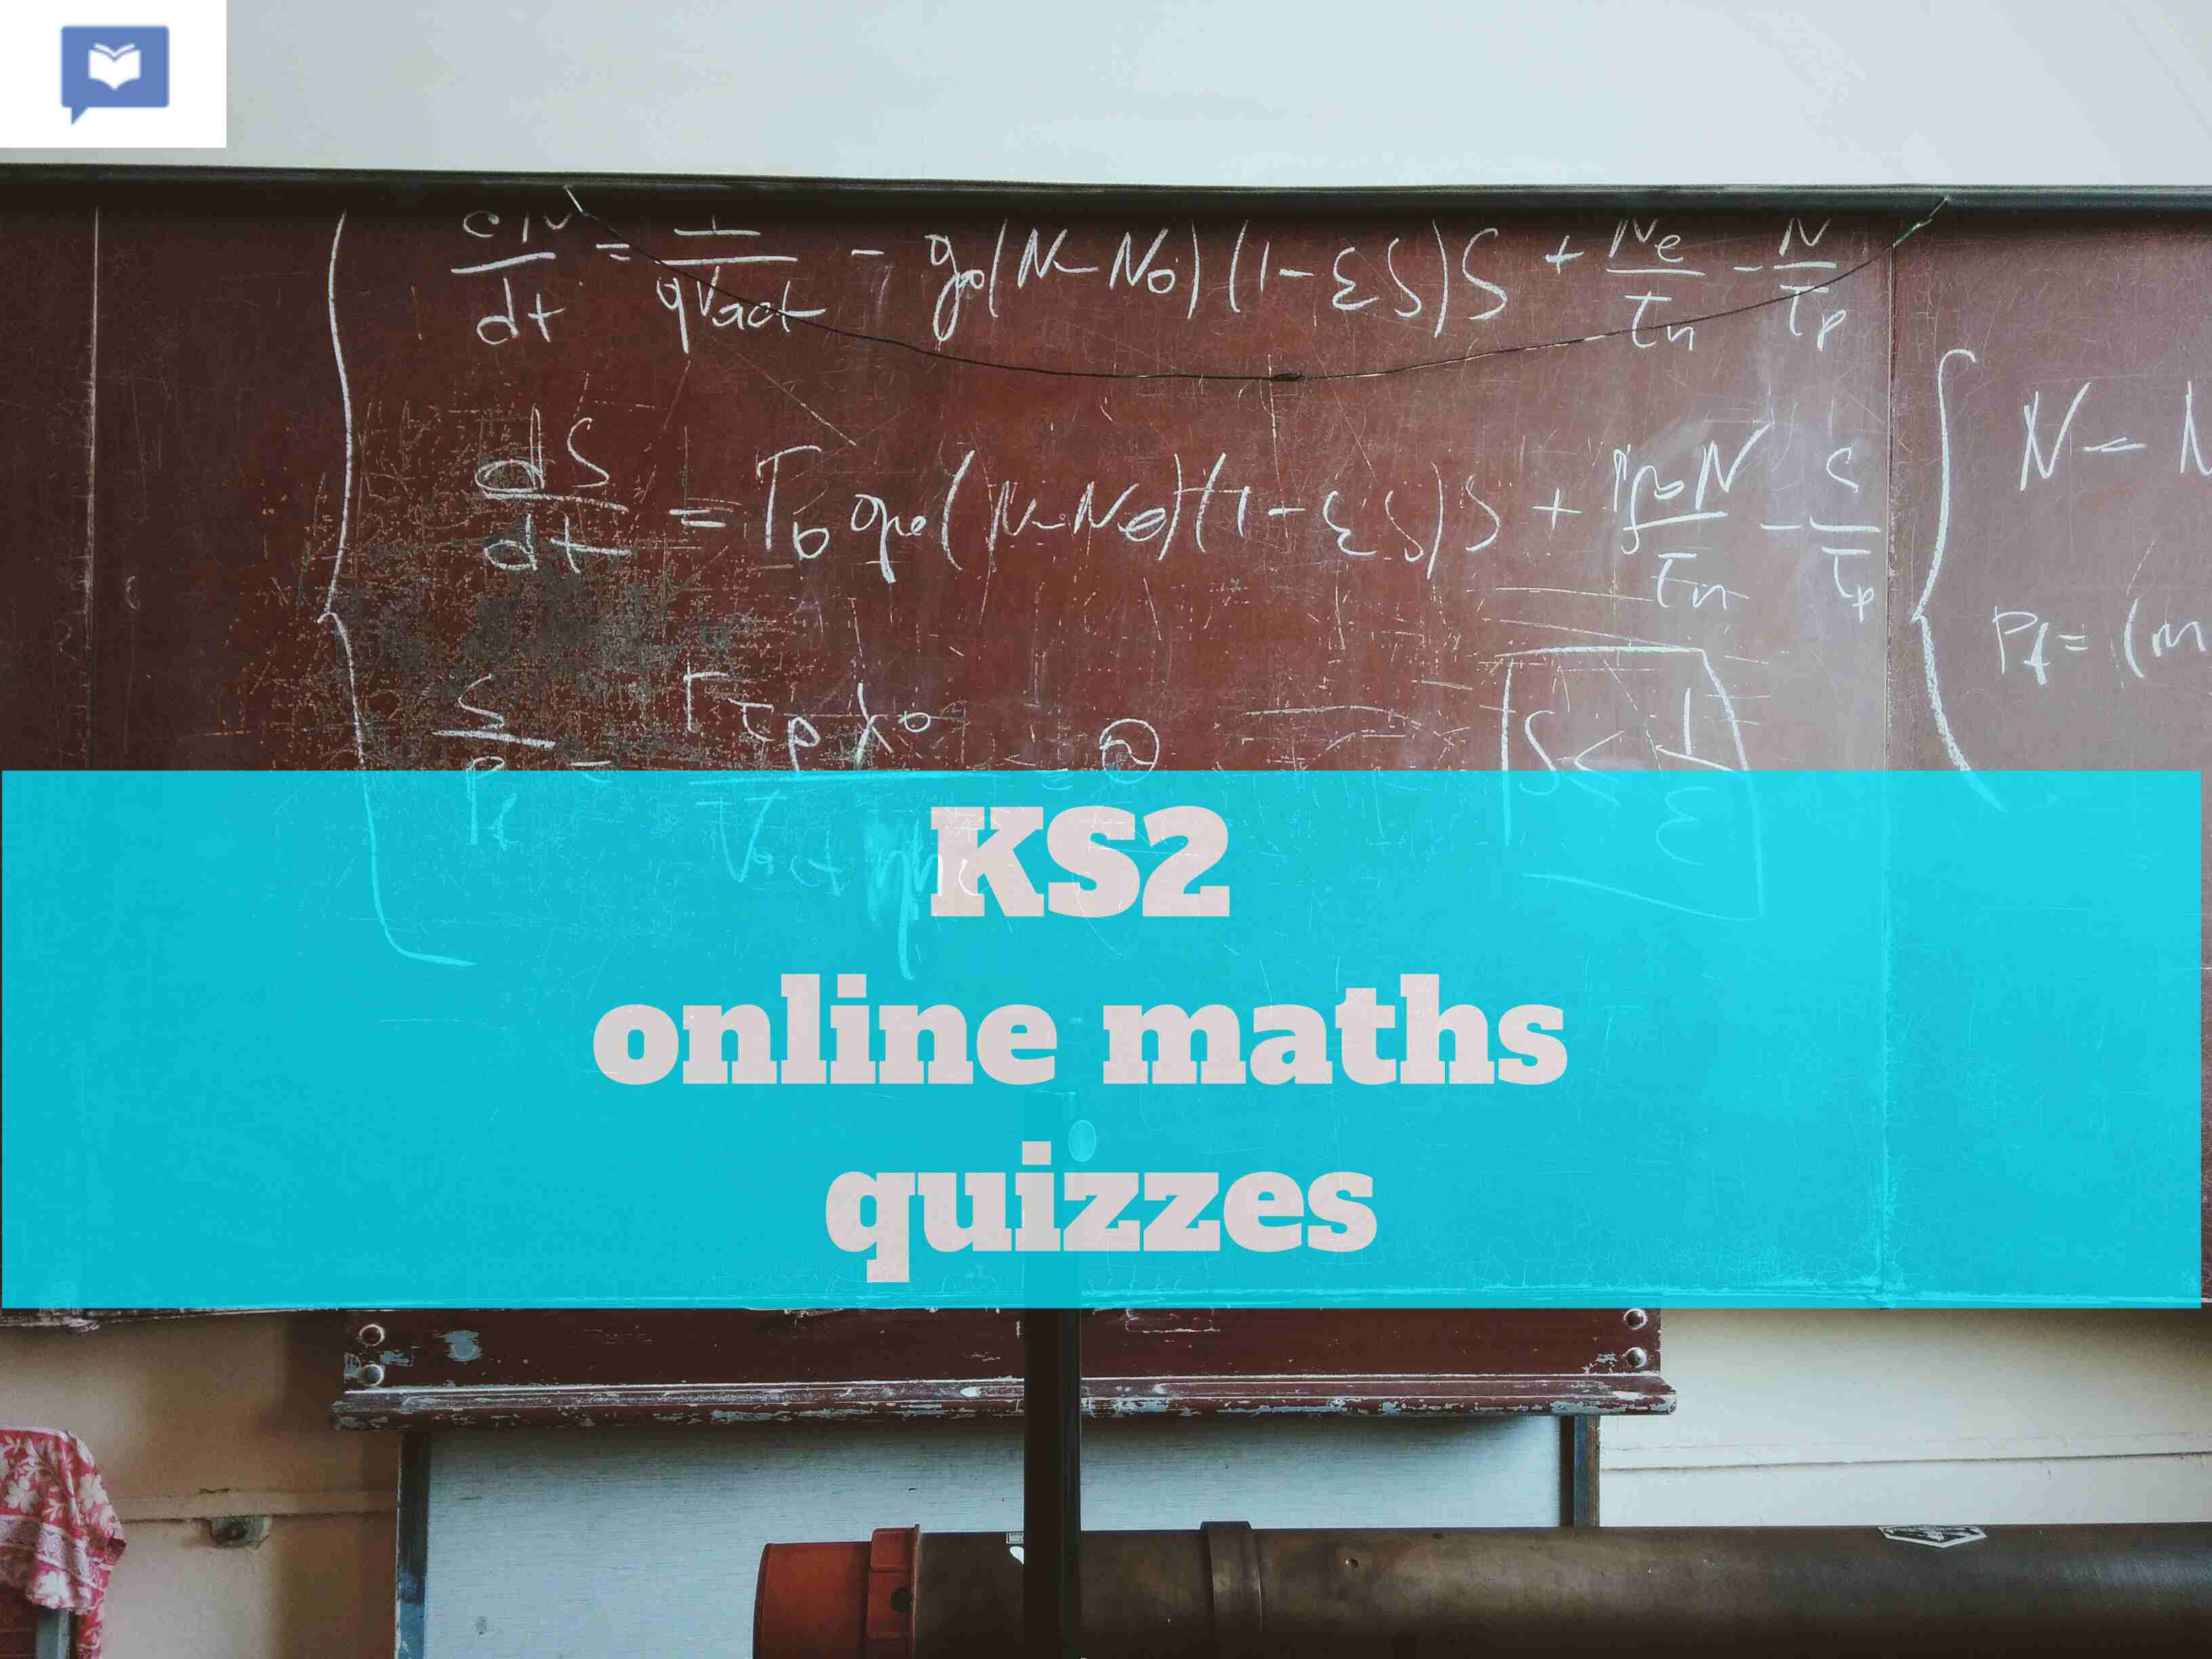 KS2 online maths quizzes